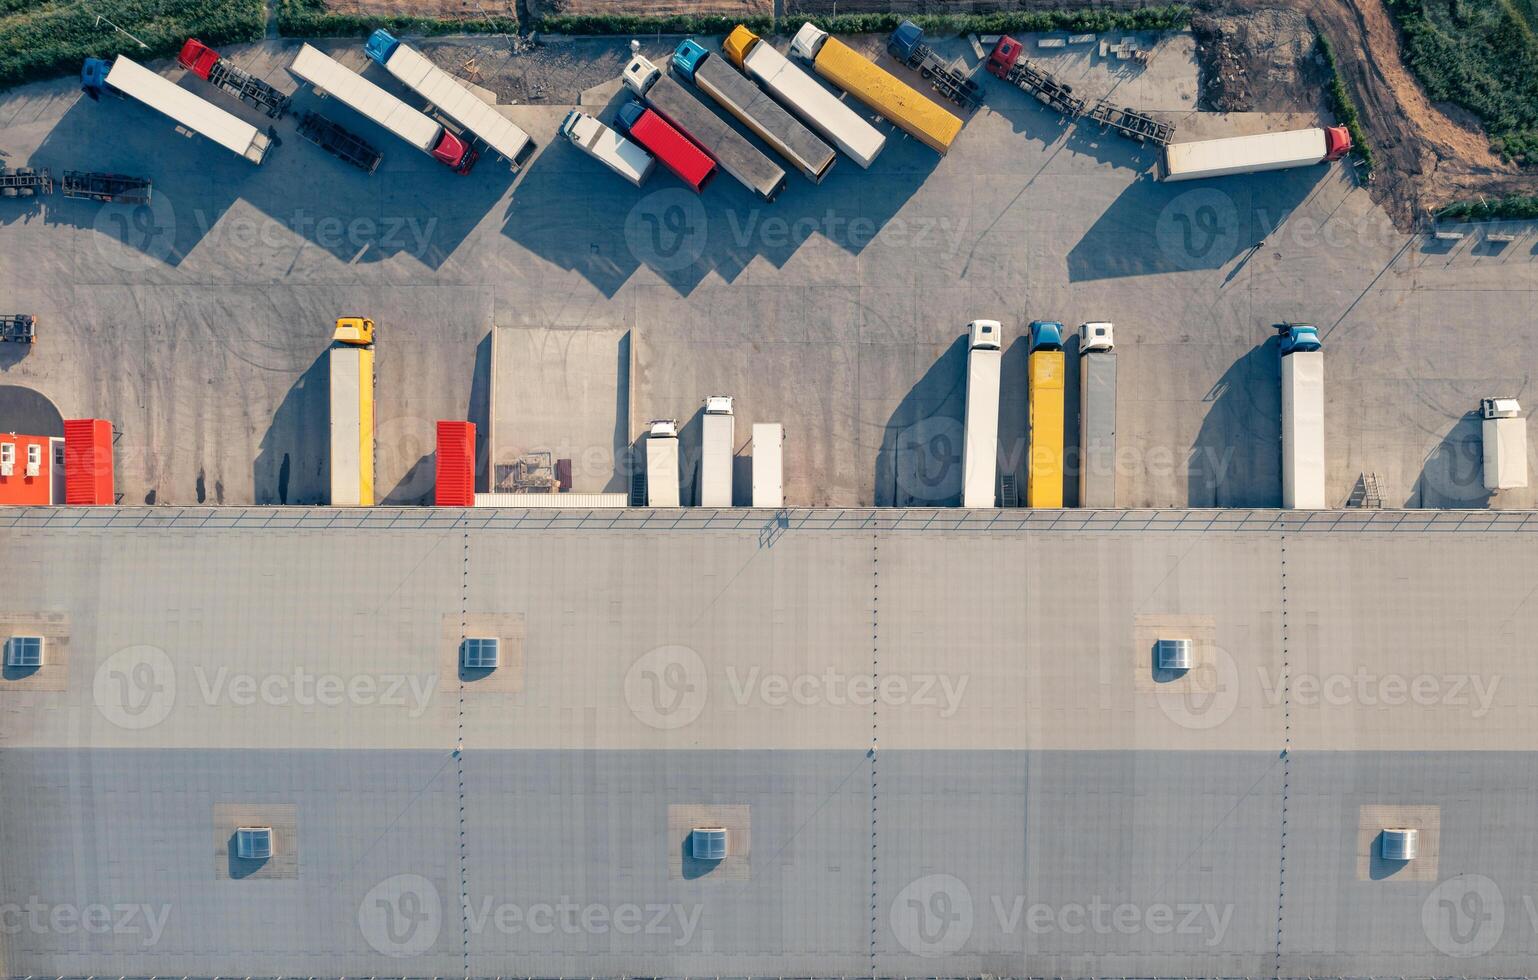 los camiones se cargan y descargan en la terminal de carga - toma aérea de drones vu superiores. foto